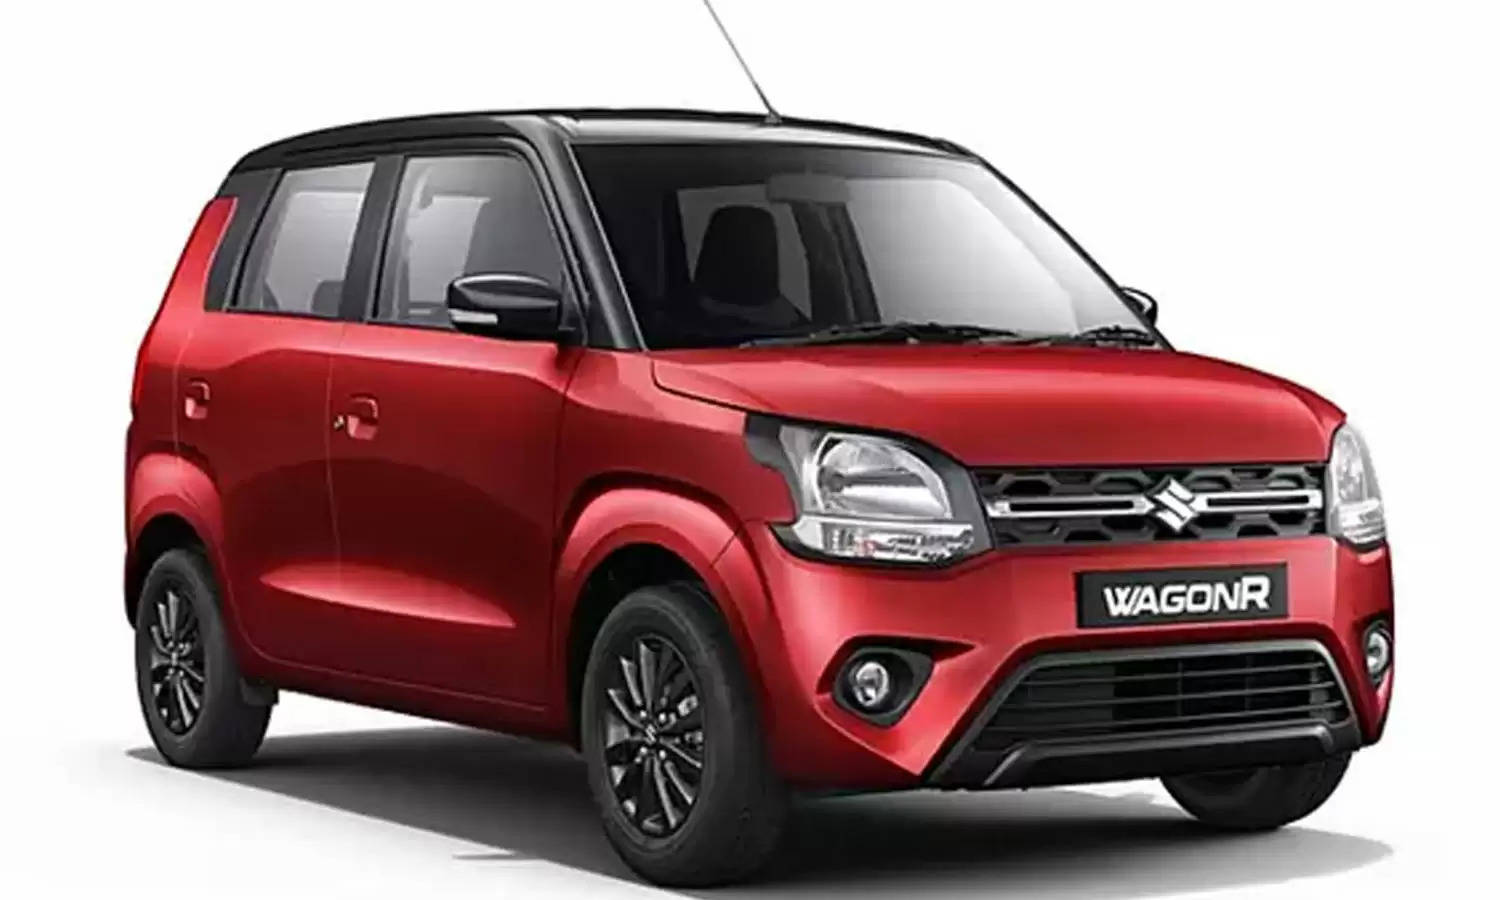 Maruti WagonR है लोगों की पहली पसंद, जानें कैसे सिर्फ 1 लाख में आपकी होगी ये कार